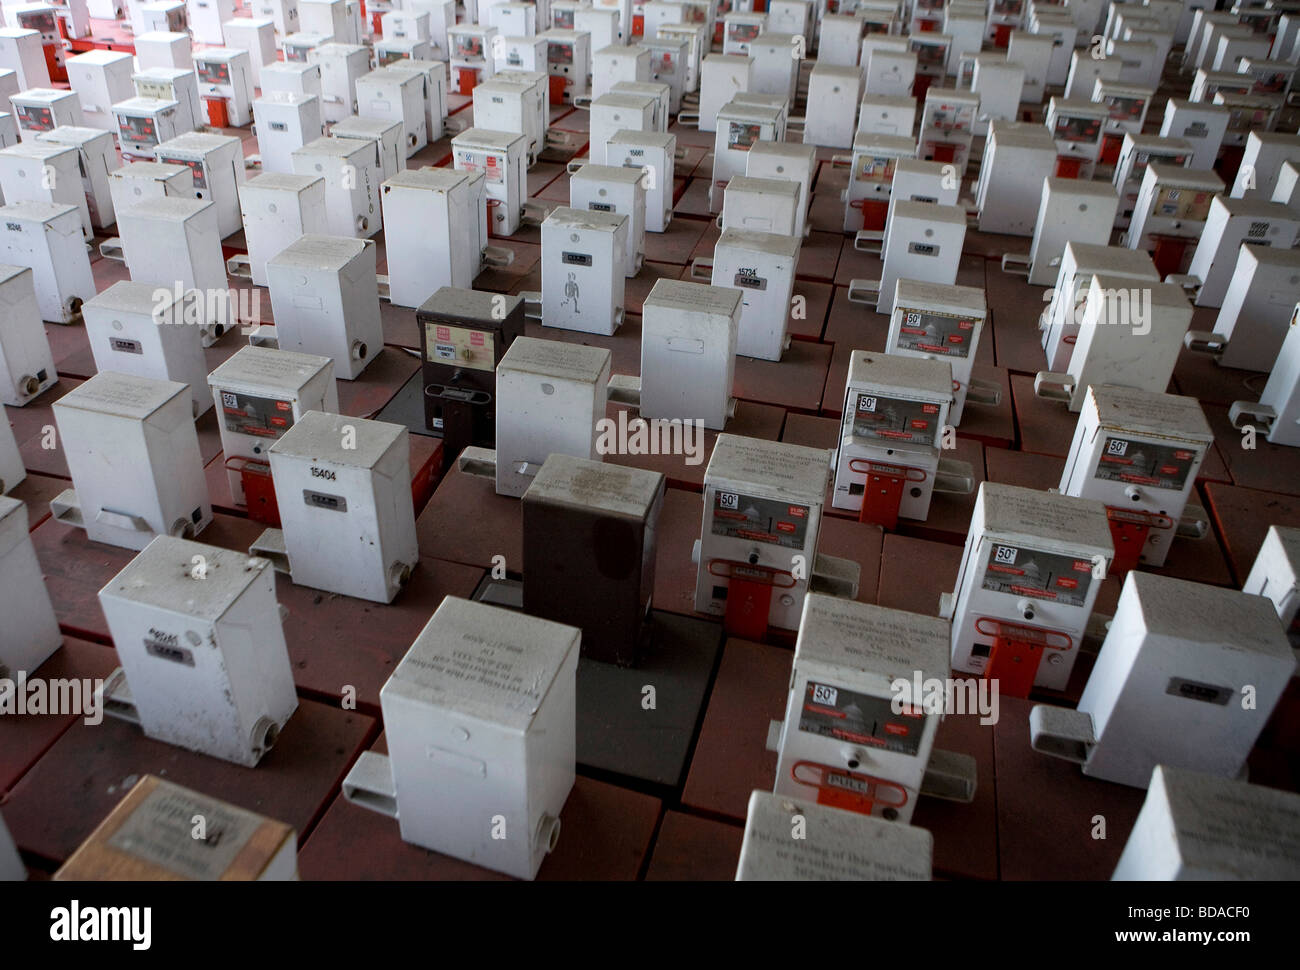 9 Août 2009 - Washington, D.C. - un stock de machines distributrices de journaux vides s'asseoir recueillies dans un parking. Banque D'Images